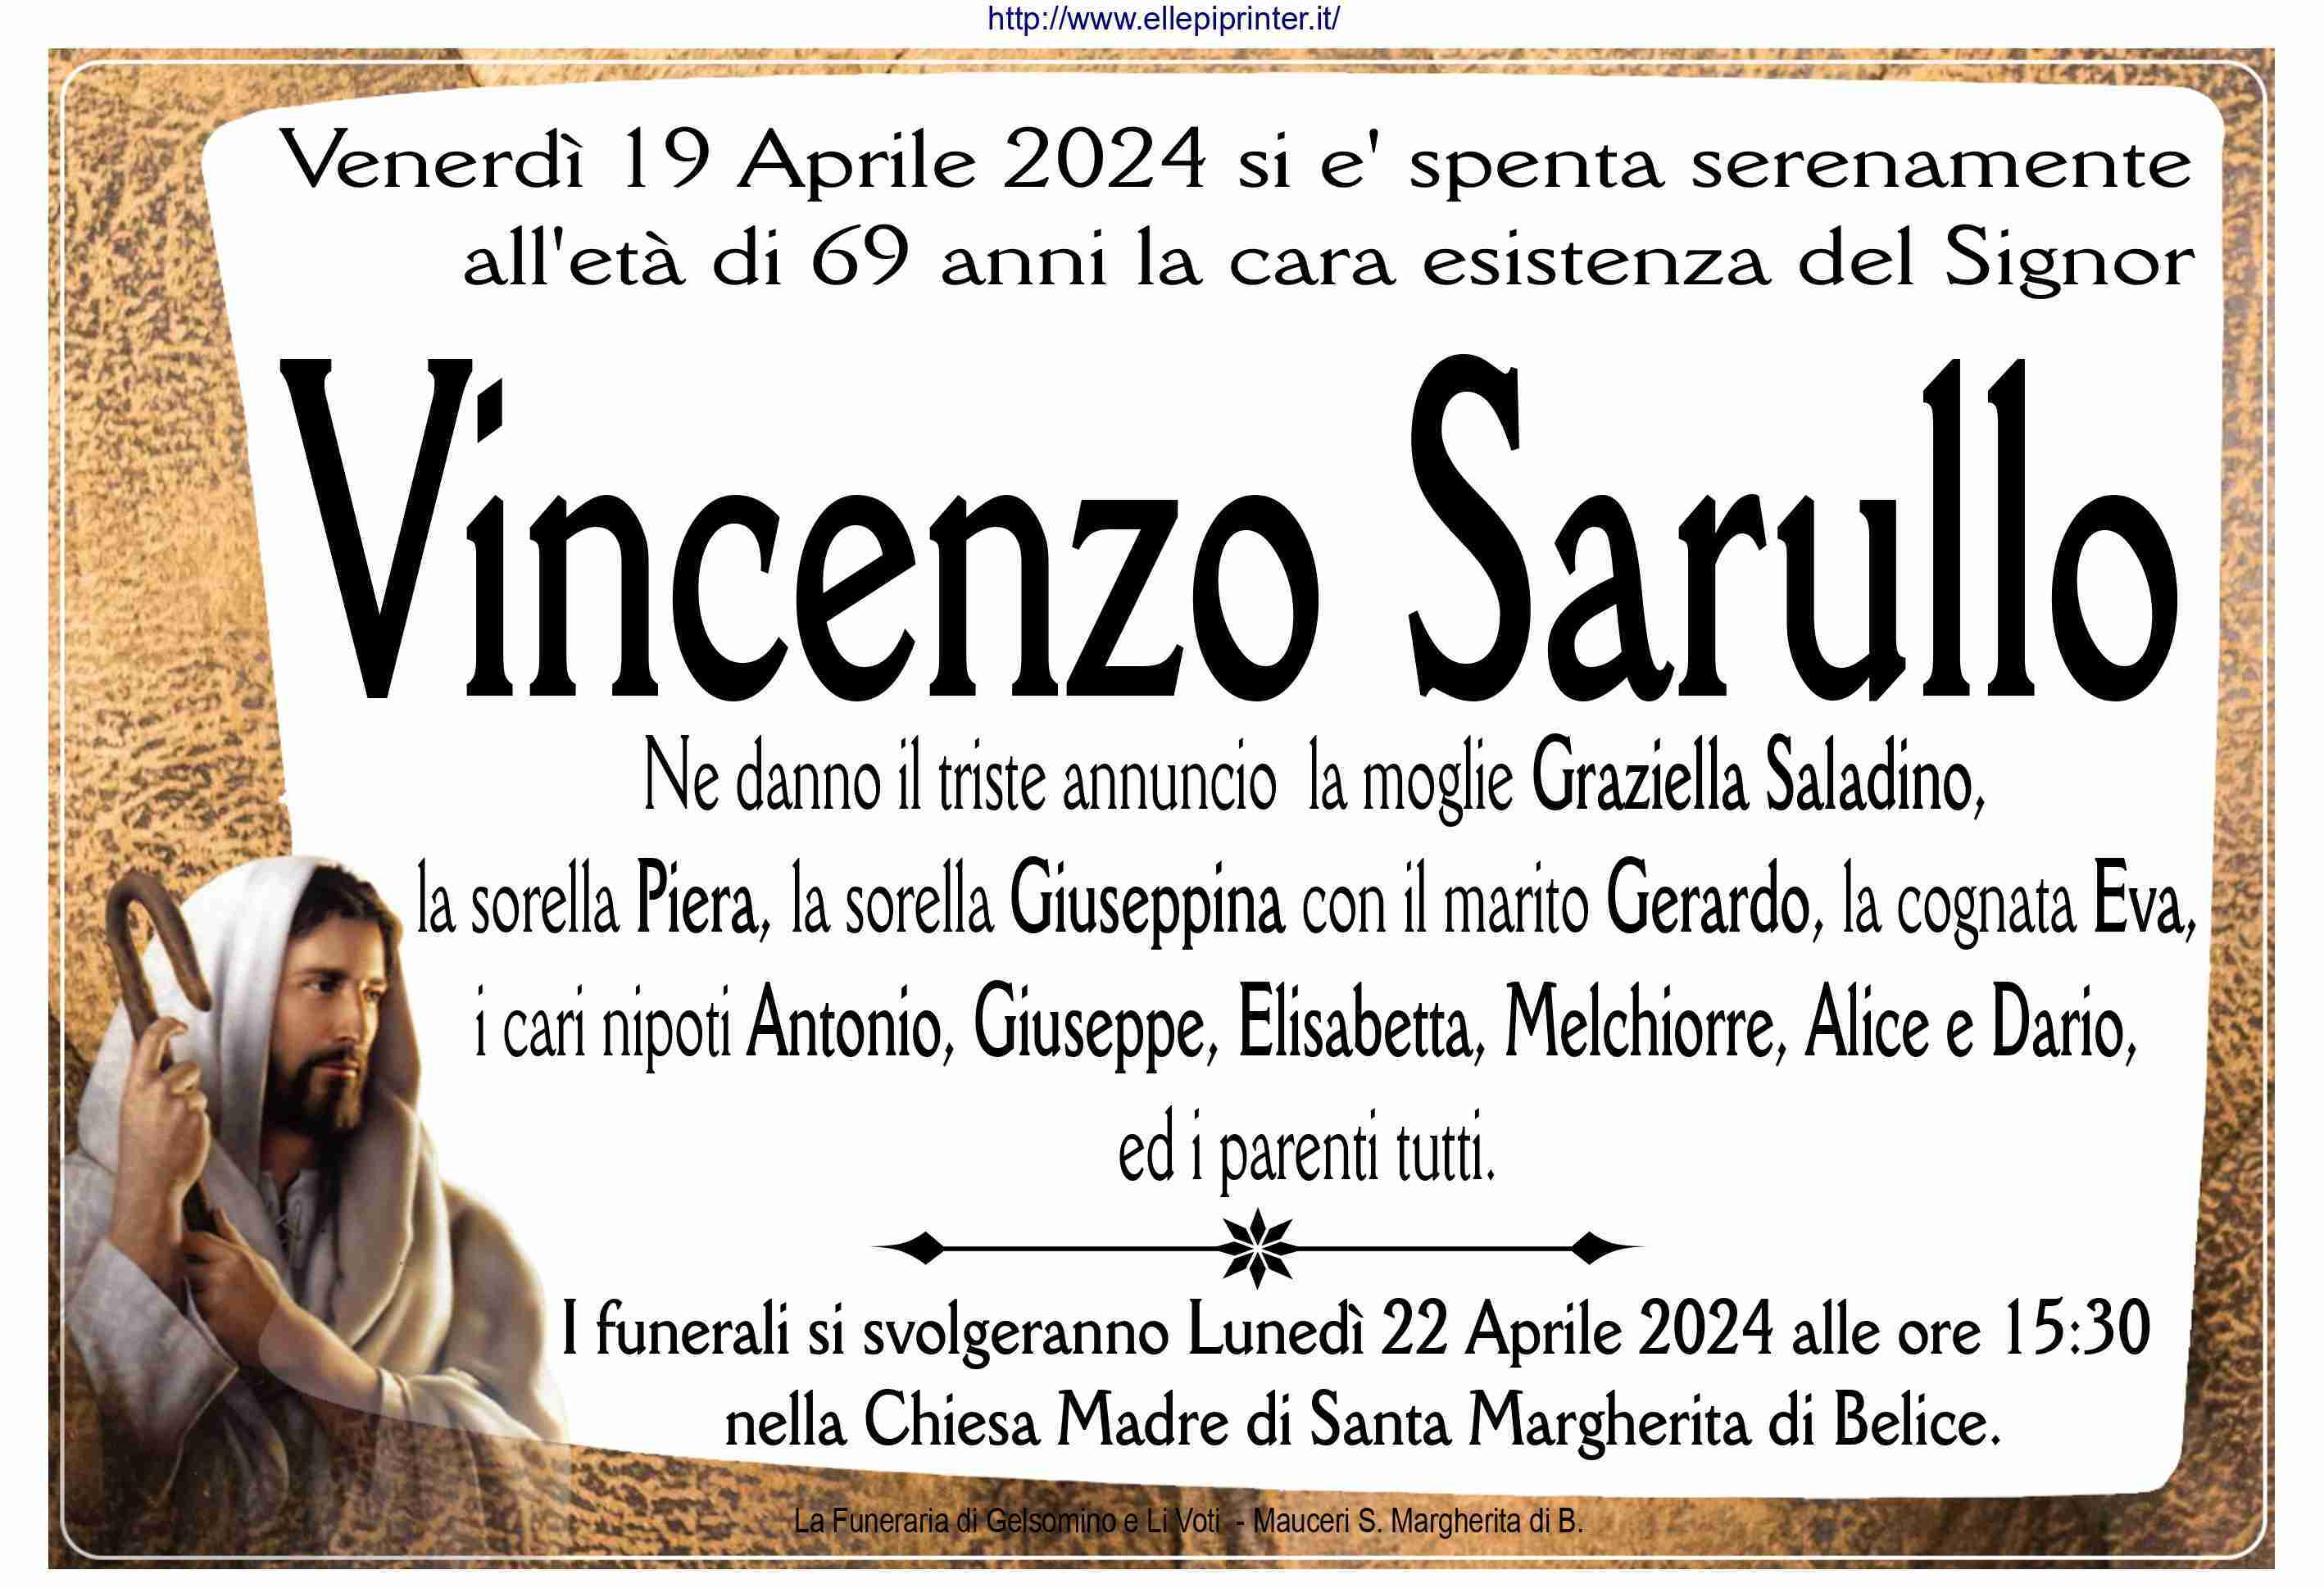 Vincenzo Sarullo